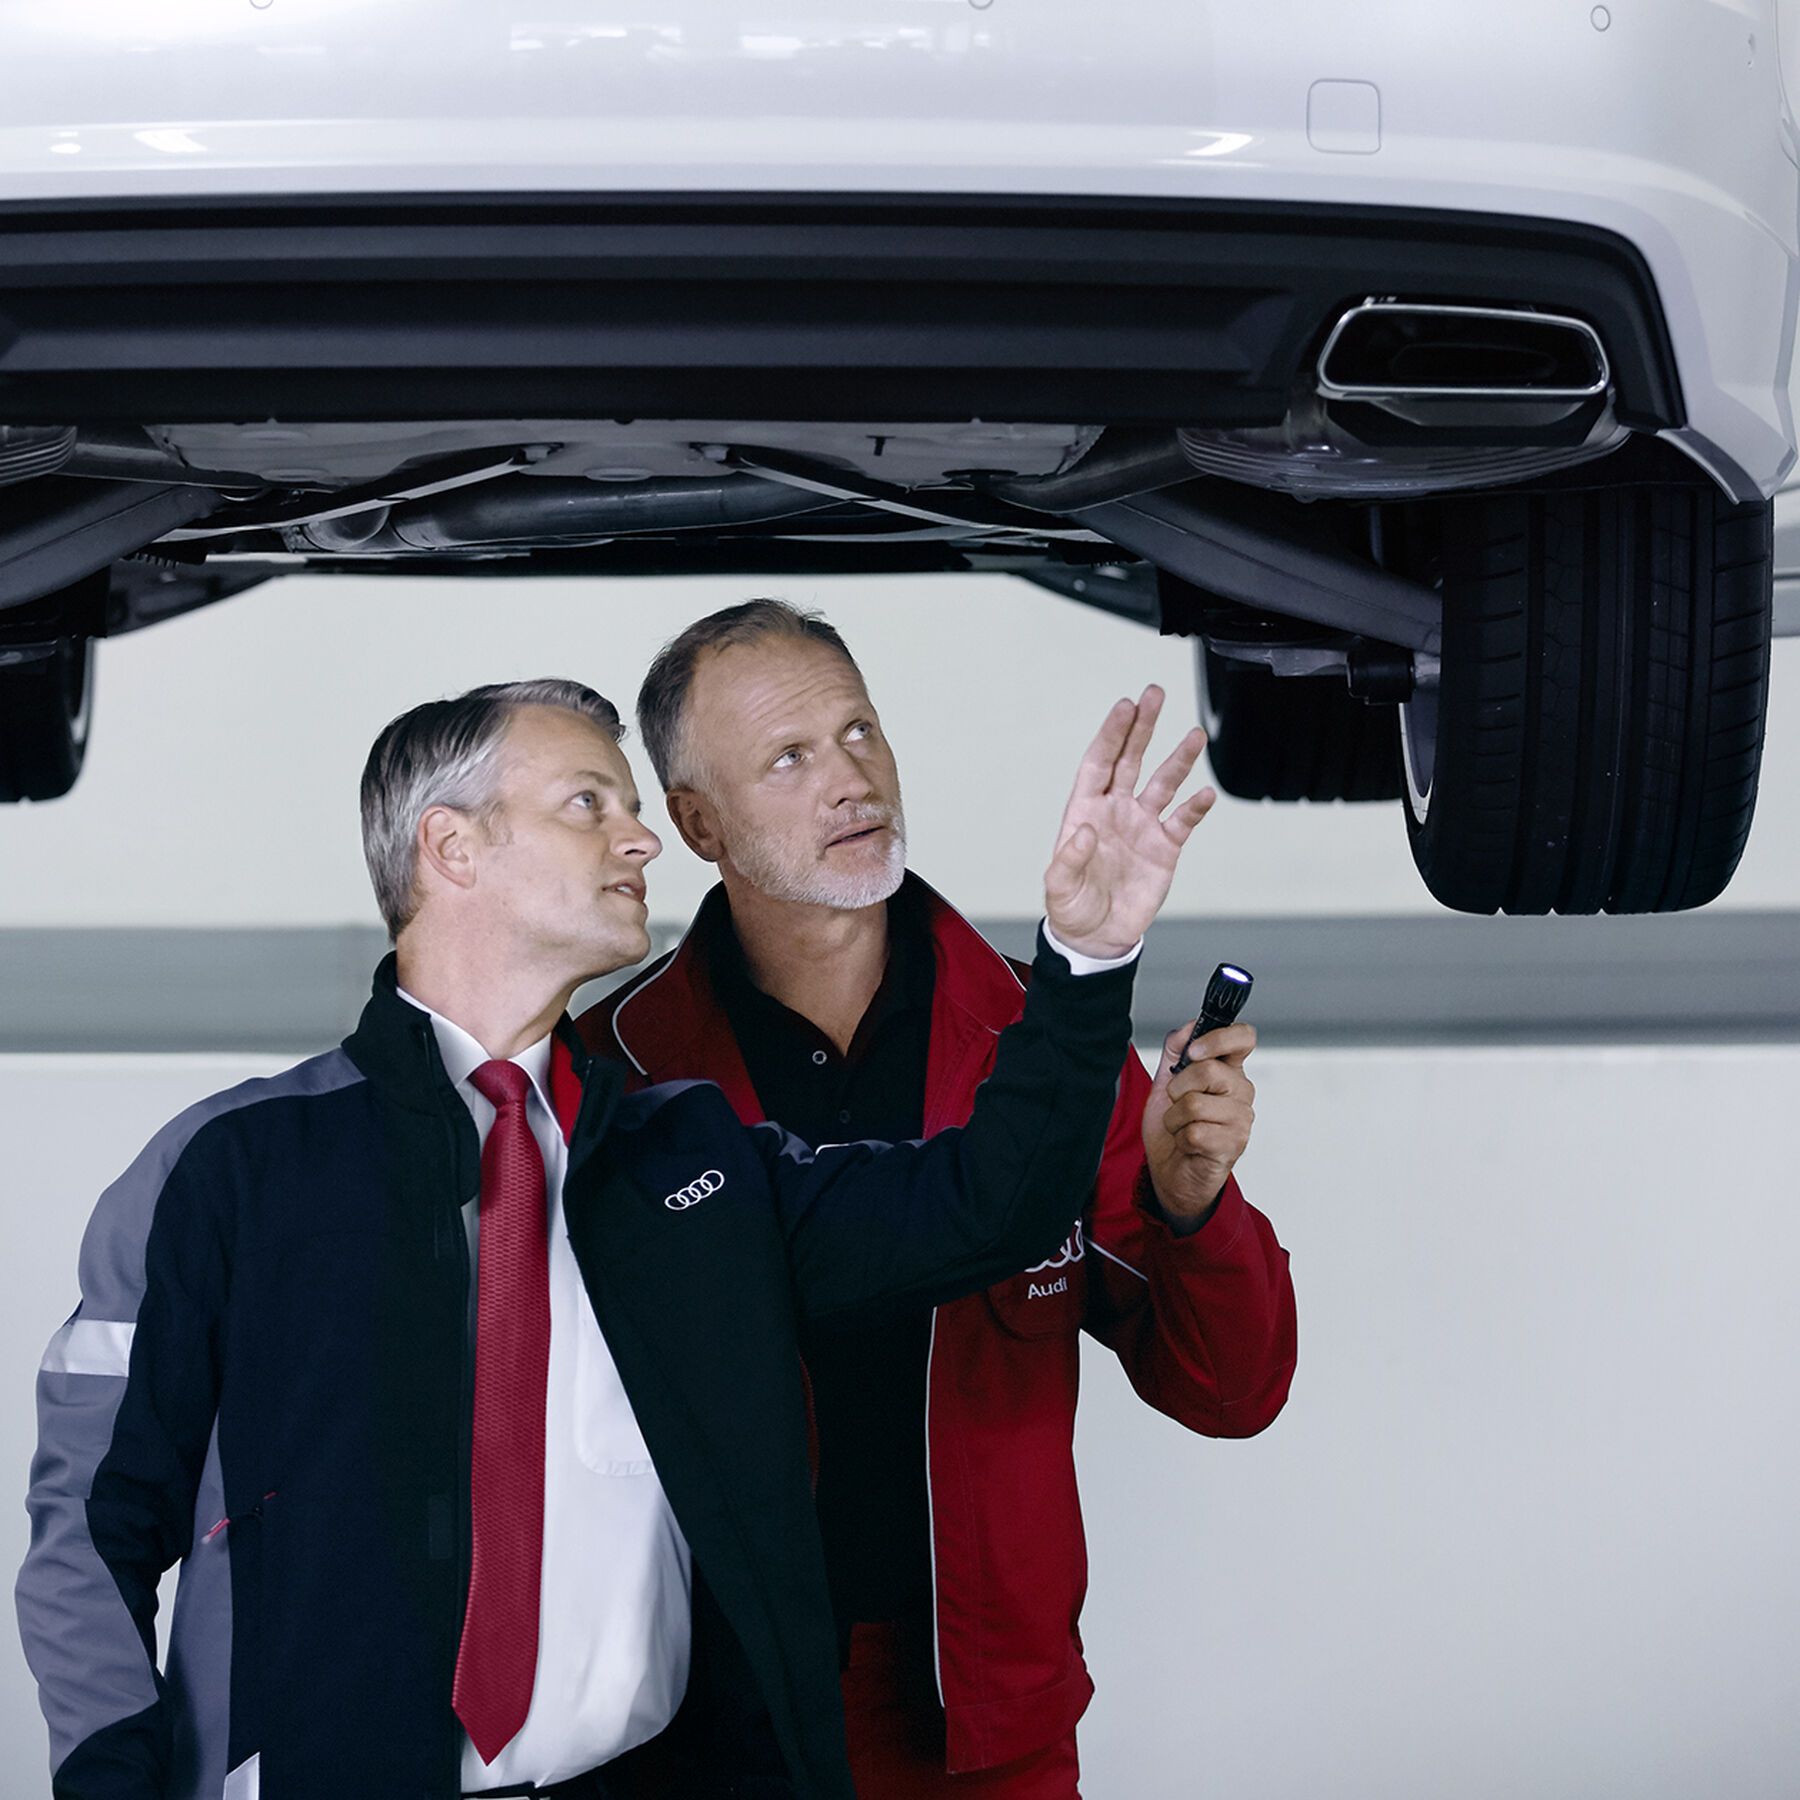 Zwei Audi Techniker beraten sich